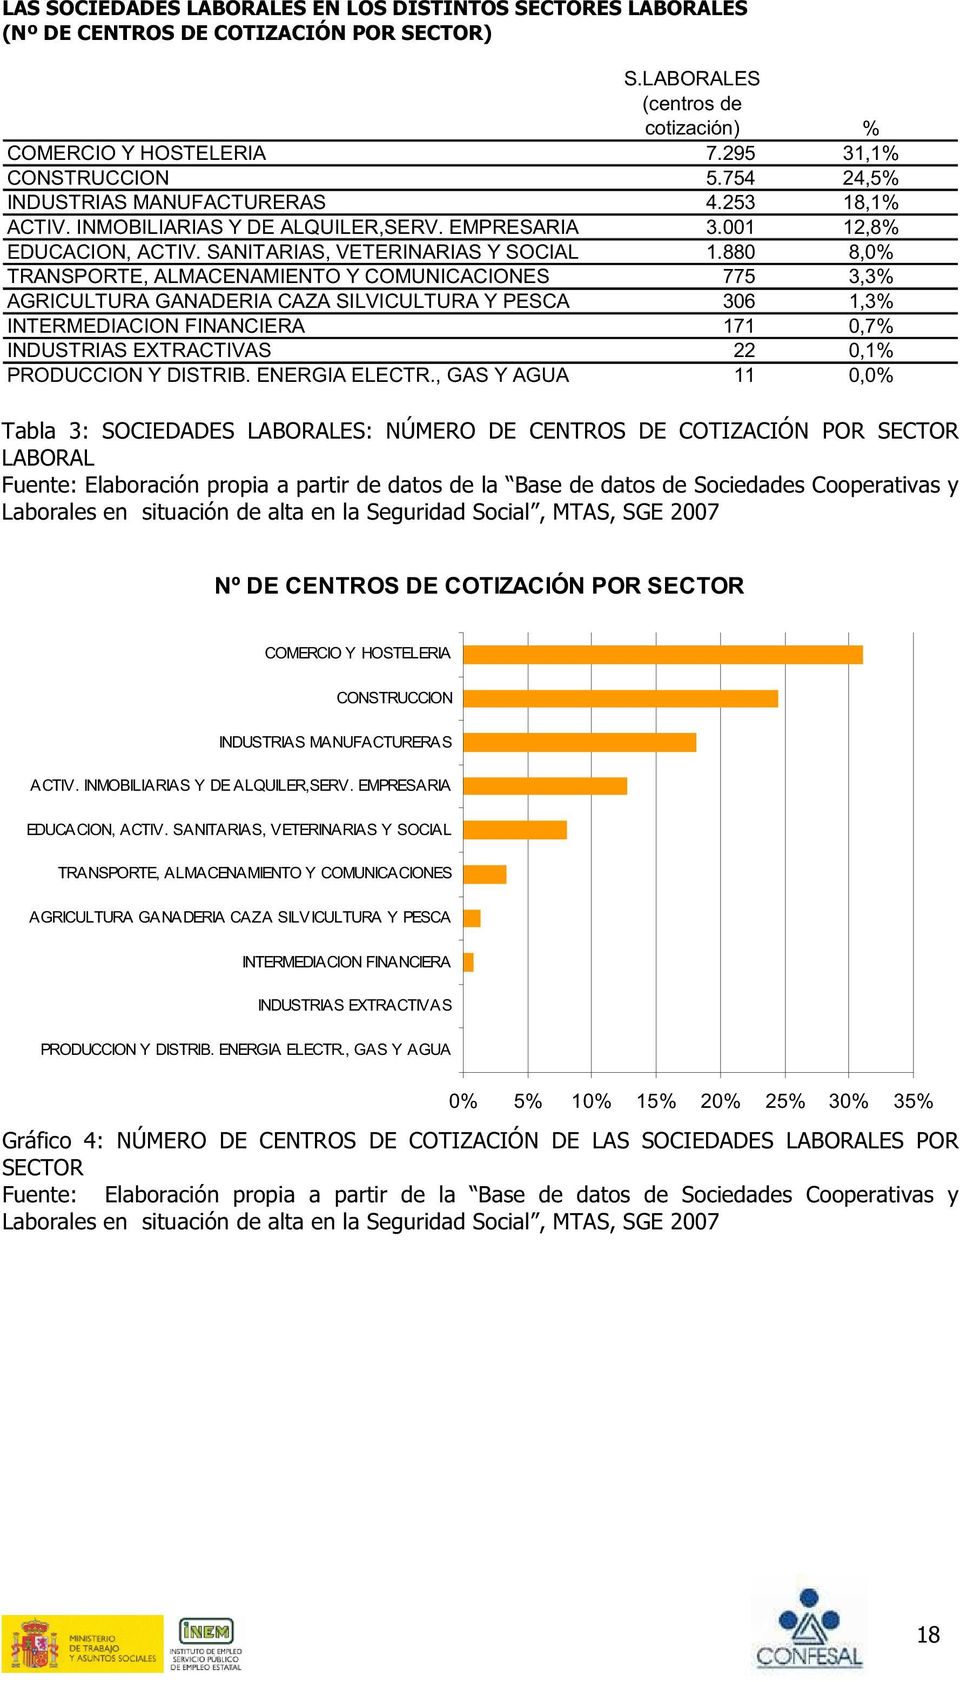 880 8,0% TRANSPORTE, ALMACENAMIENTO Y COMUNICACIONES 775 3,3% AGRICULTURA GANADERIA CAZA SILVICULTURA Y PESCA 306 1,3% INTERMEDIACION FINANCIERA 171 0,7% INDUSTRIAS EXTRACTIVAS 22 0,1% PRODUCCION Y